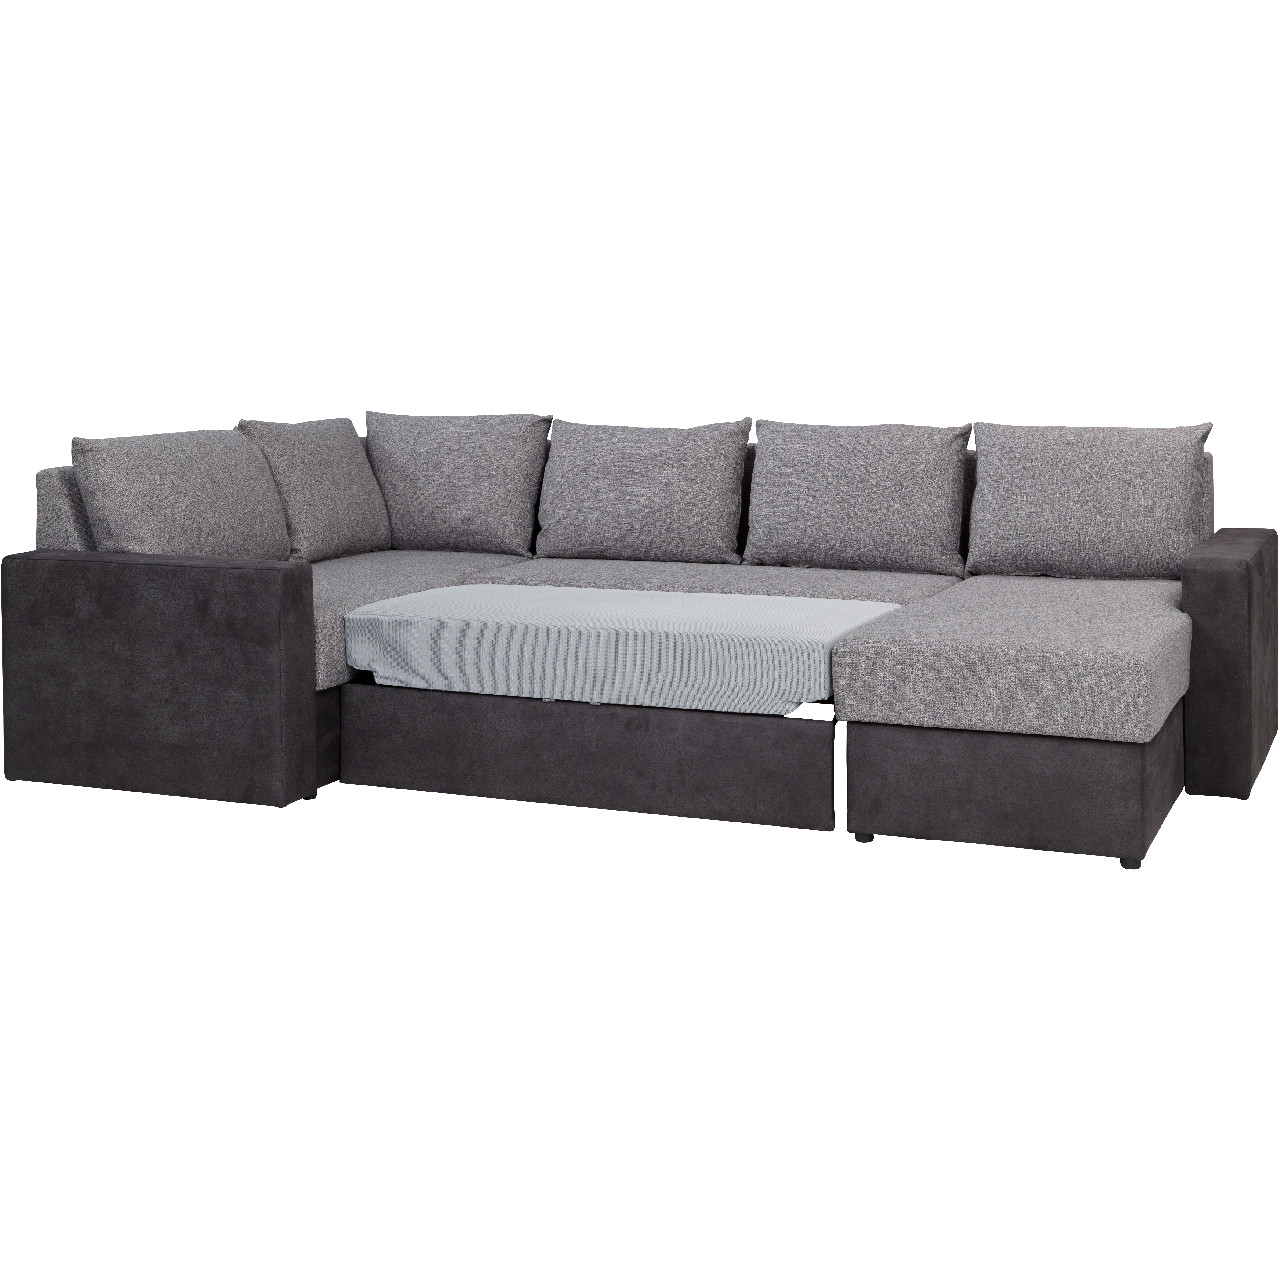 Corner sofa DENVER MAXI mdl 05 + montana 101 right-hand